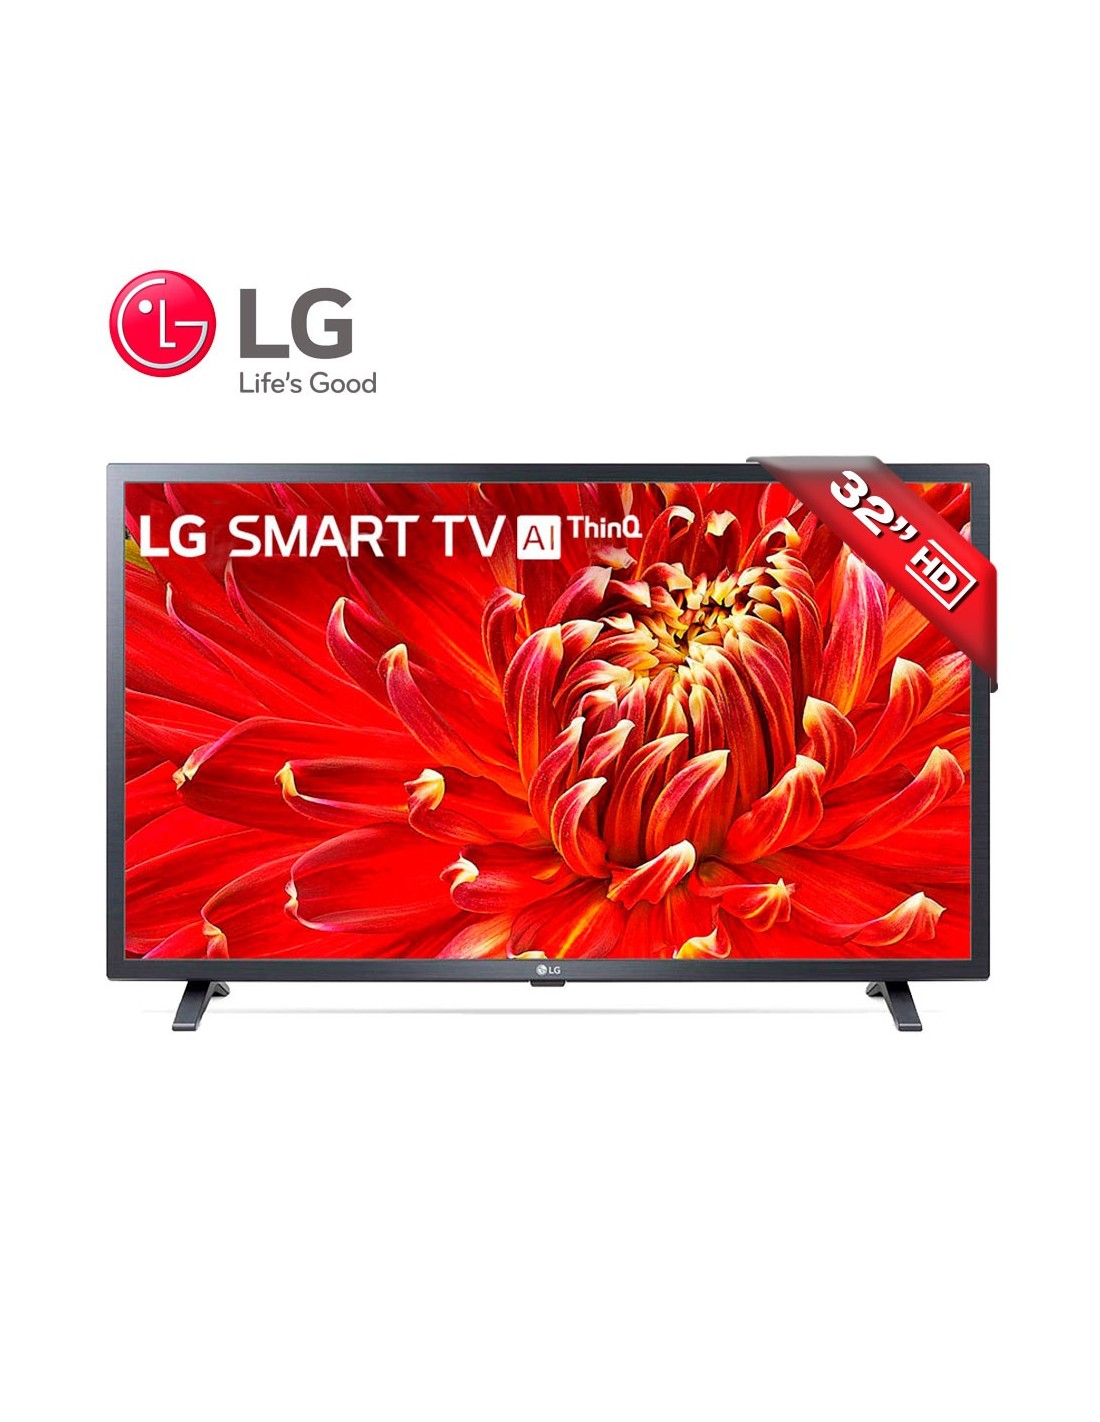 Smart Tv 32 Pulgadas LG Ai Thinq 32lm620b Hdr Wifi Gb